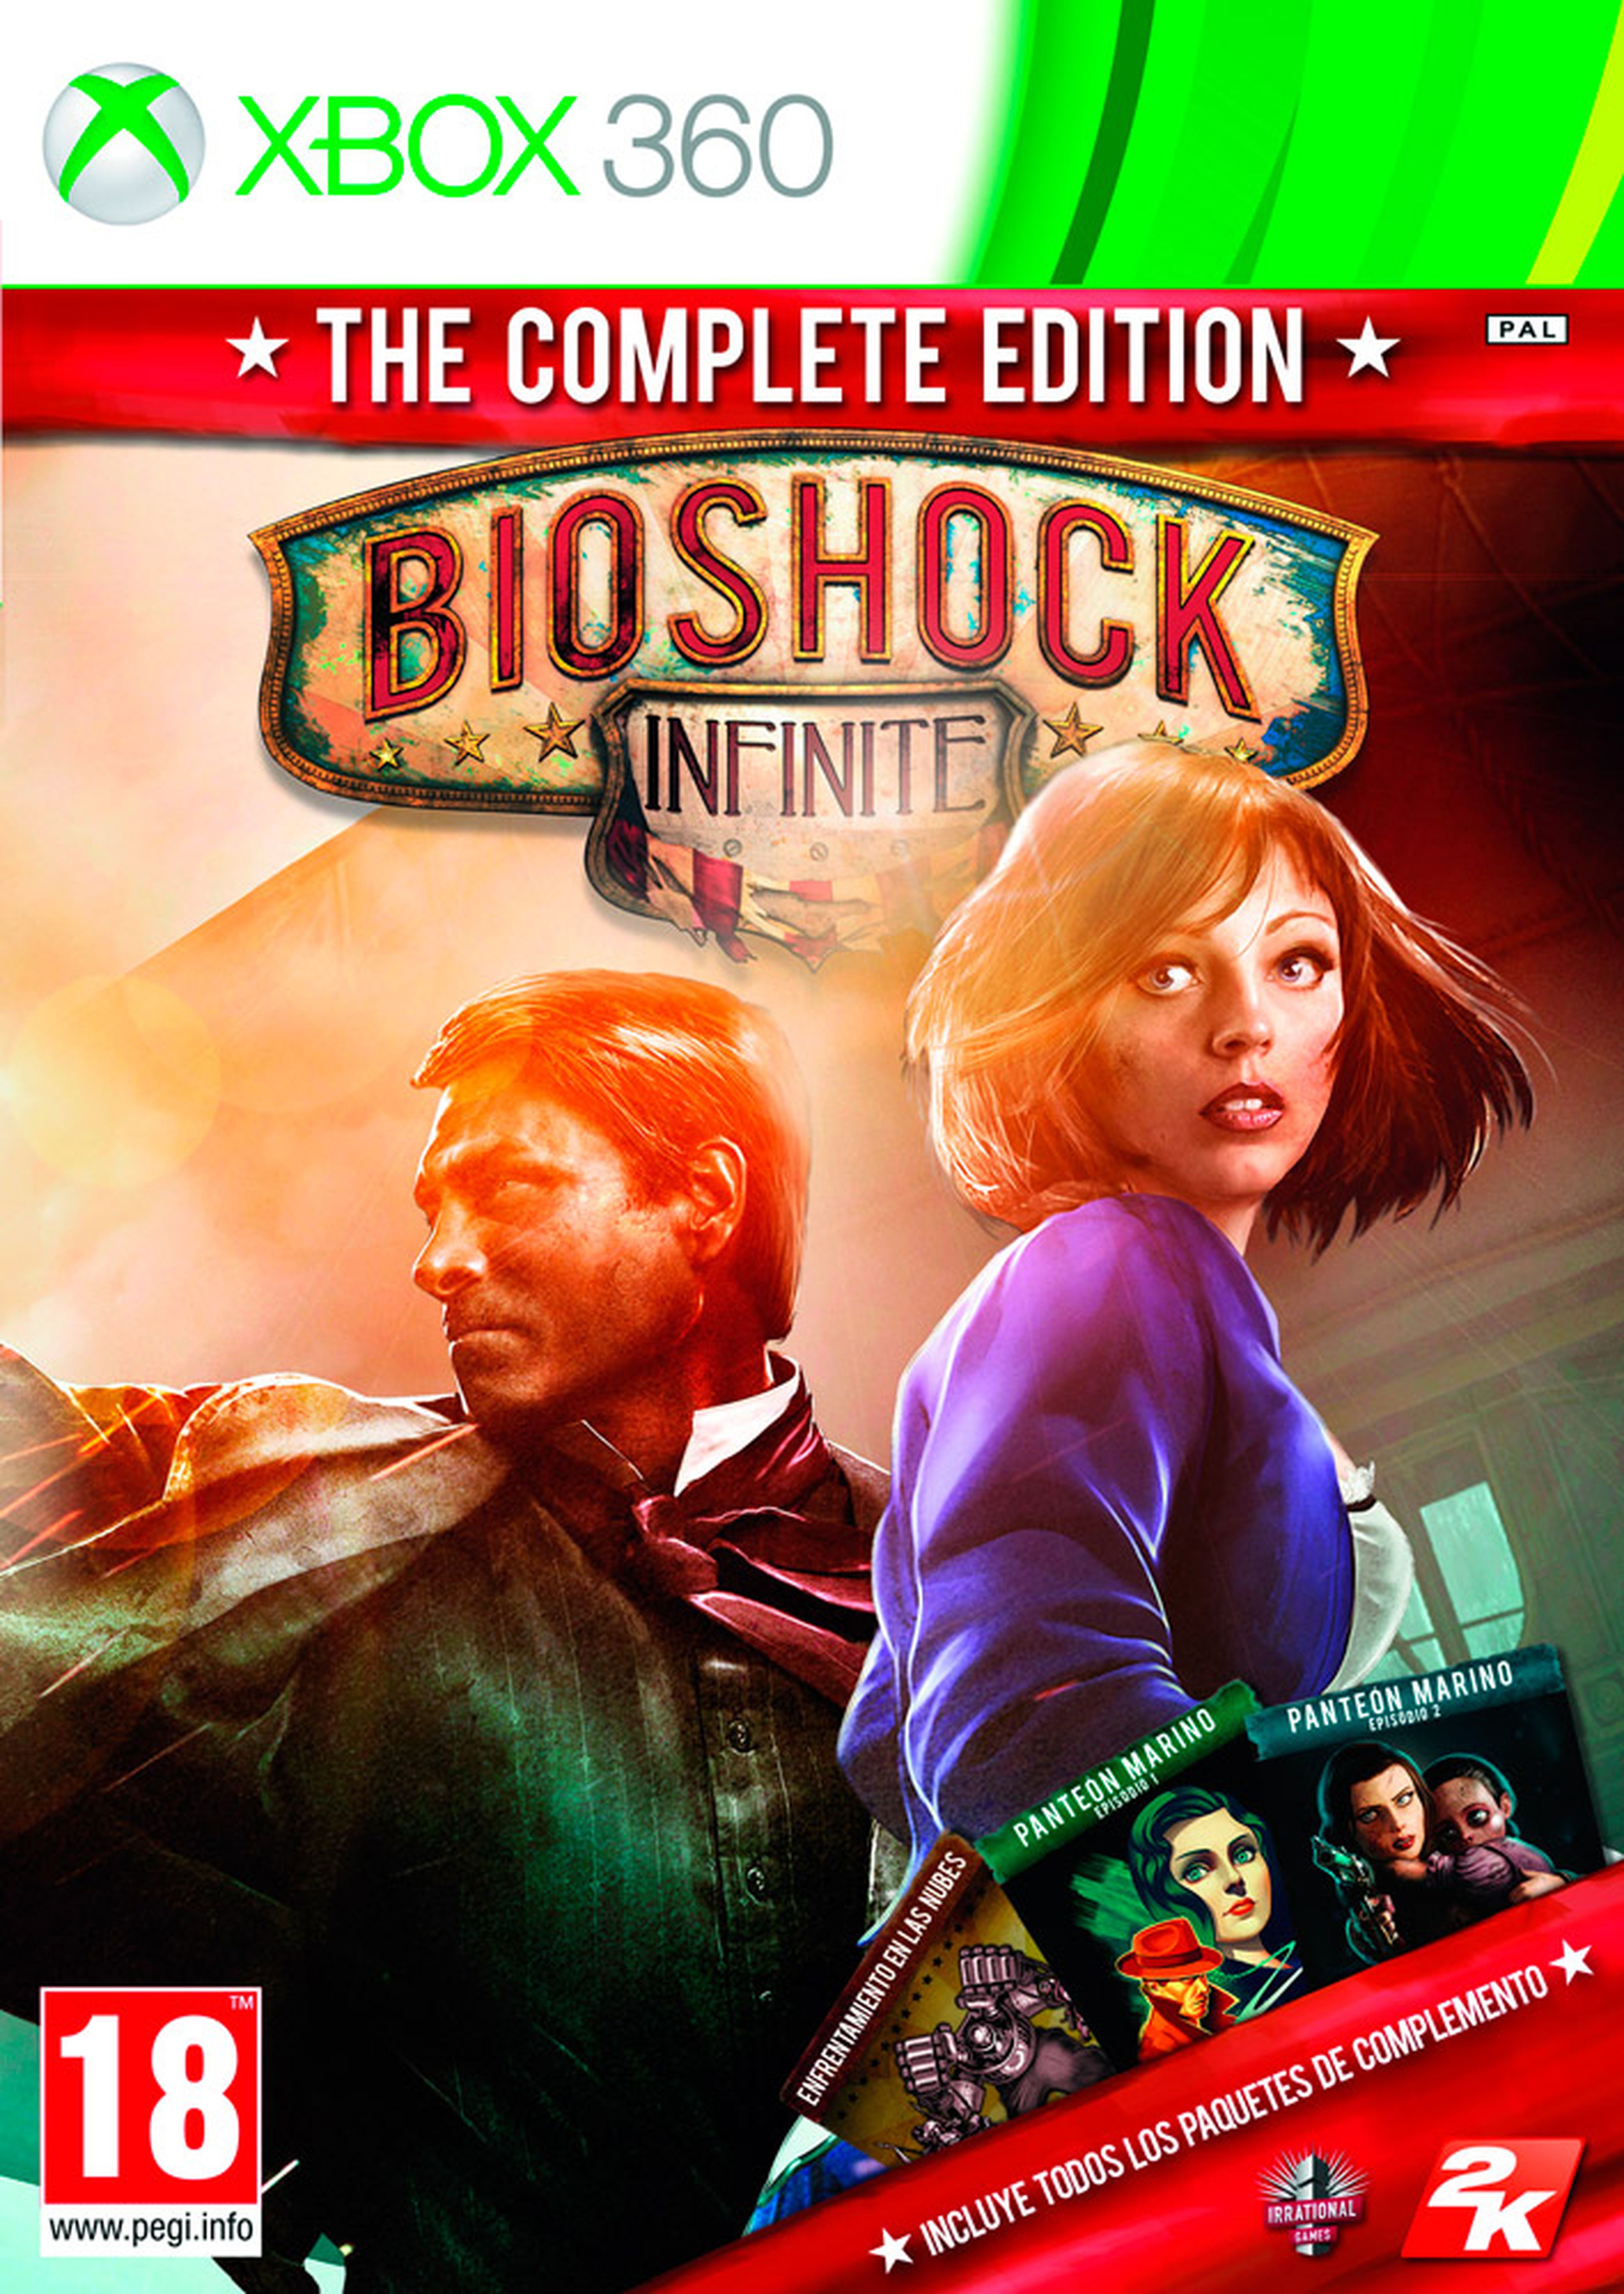 Bioshock Infinite The Complete Edition, disponible sólo en GAME